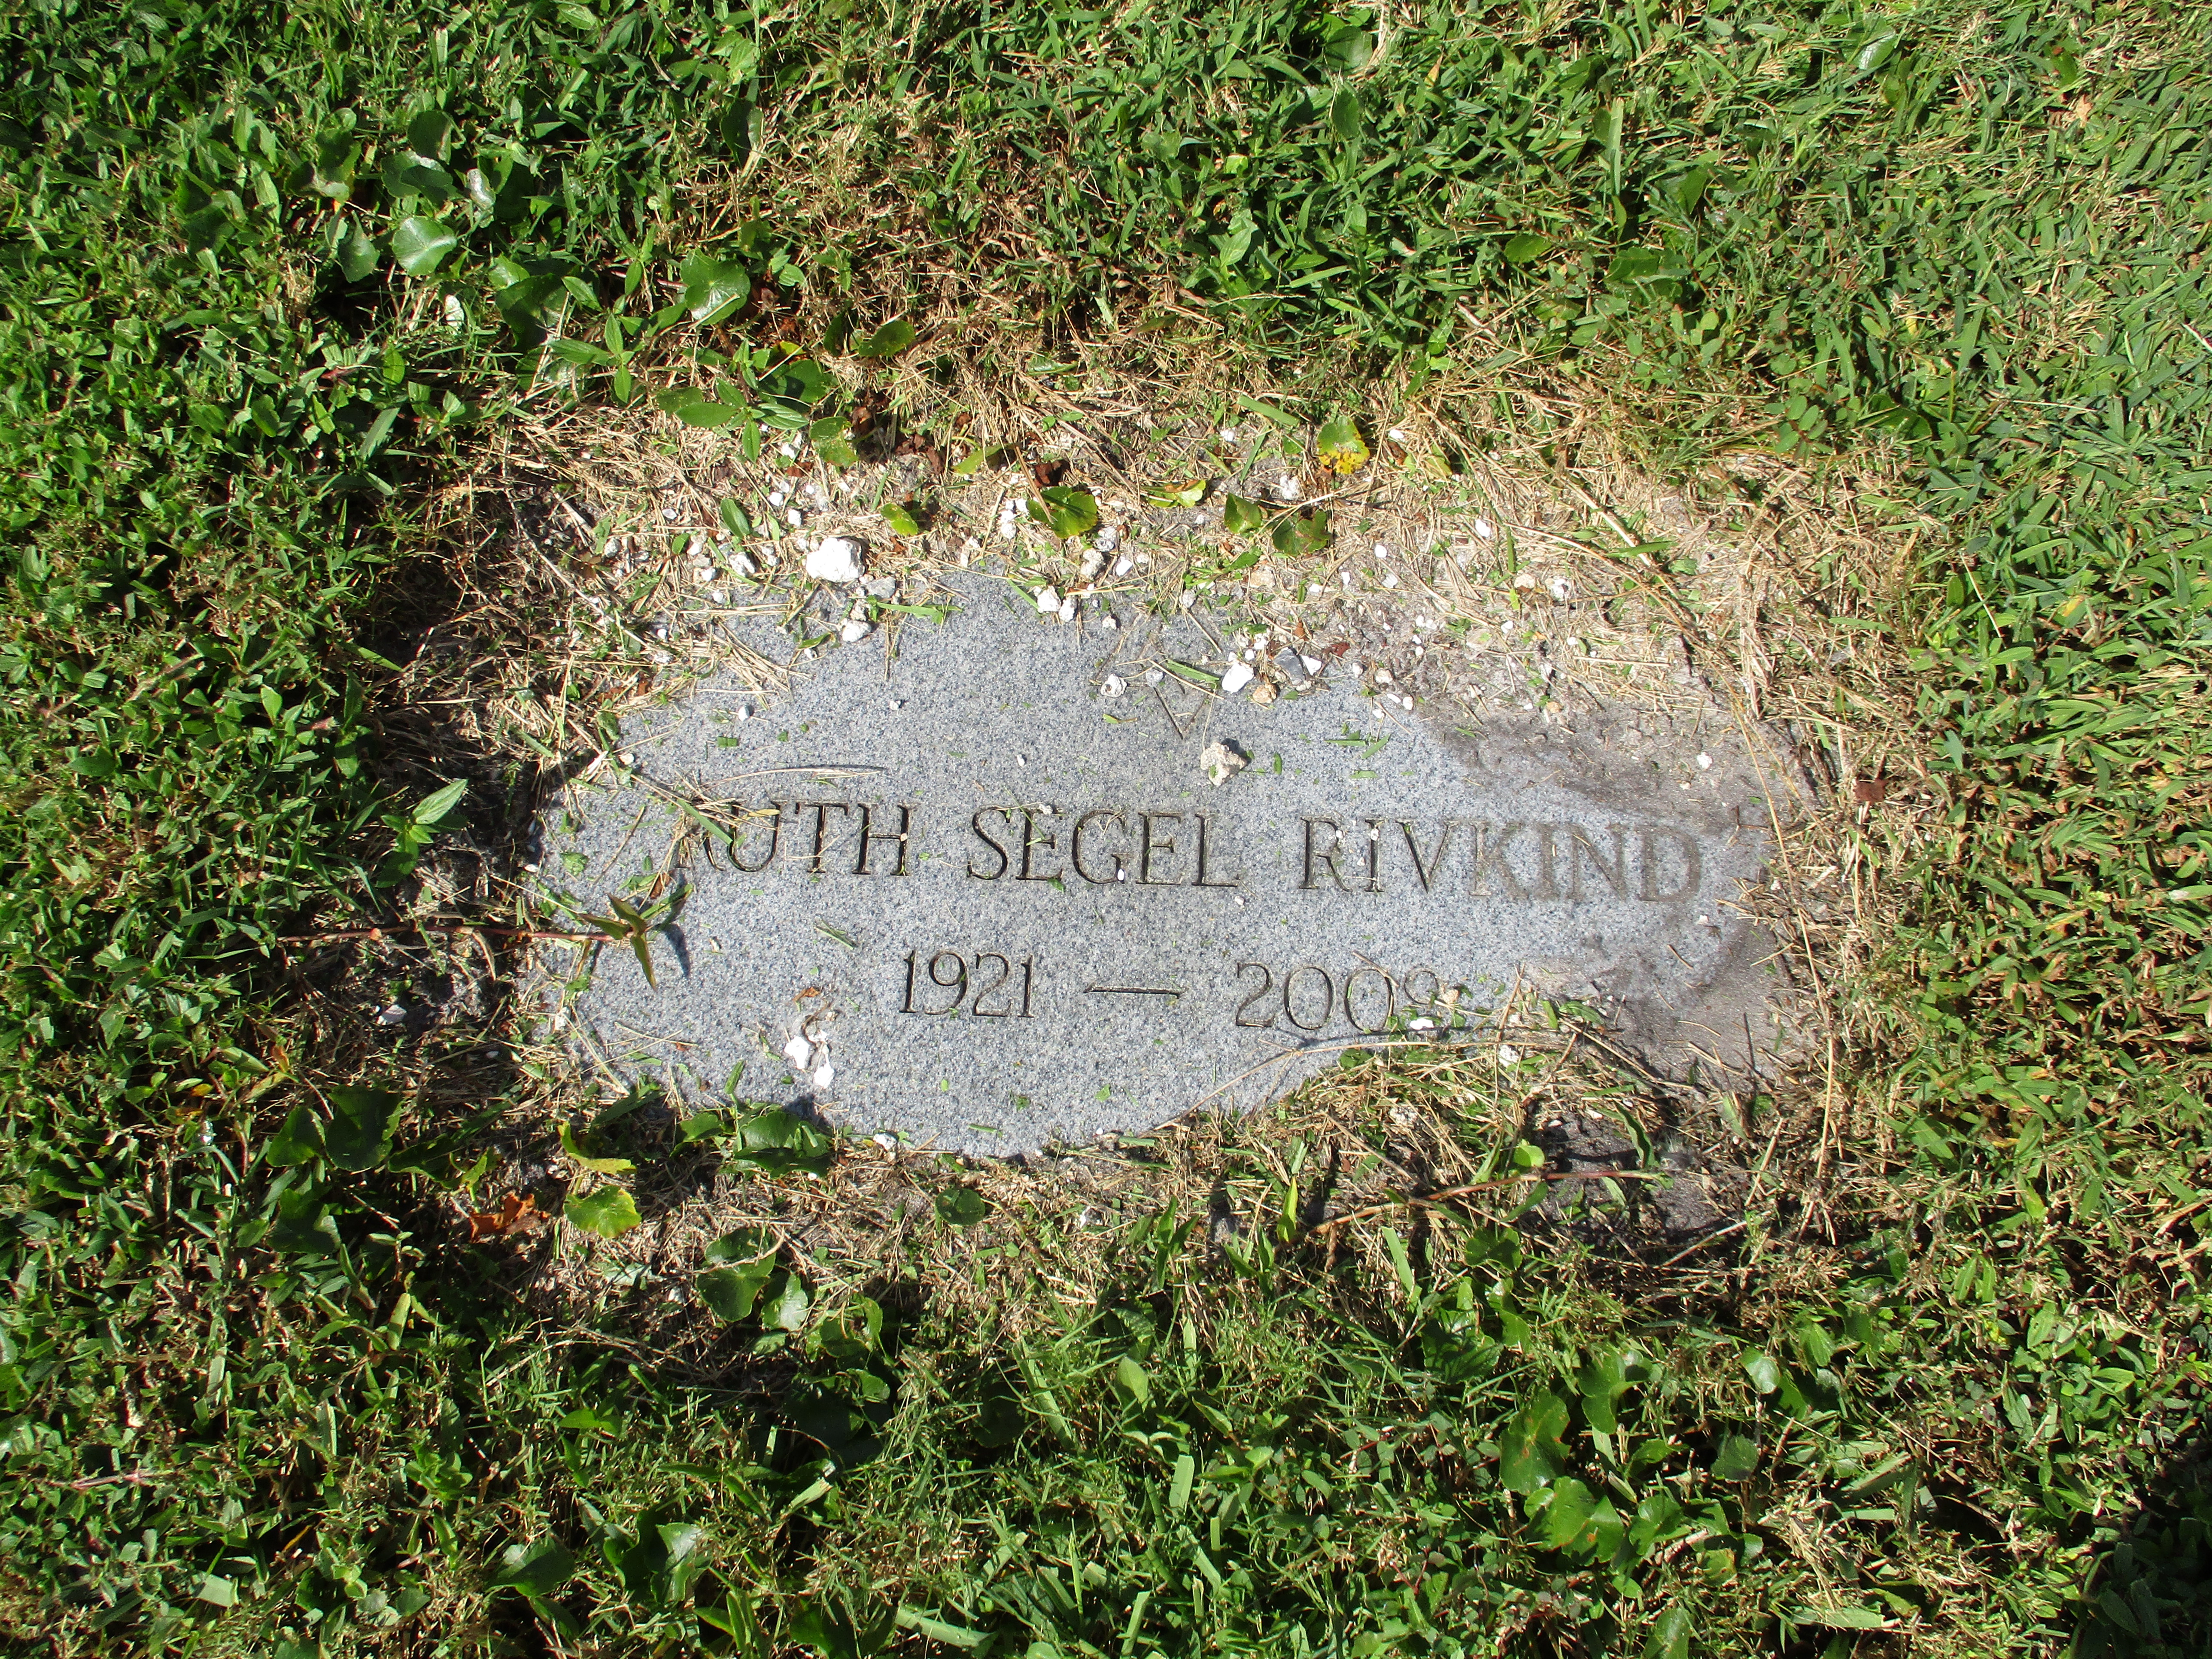 Ruth Segel Rivkind